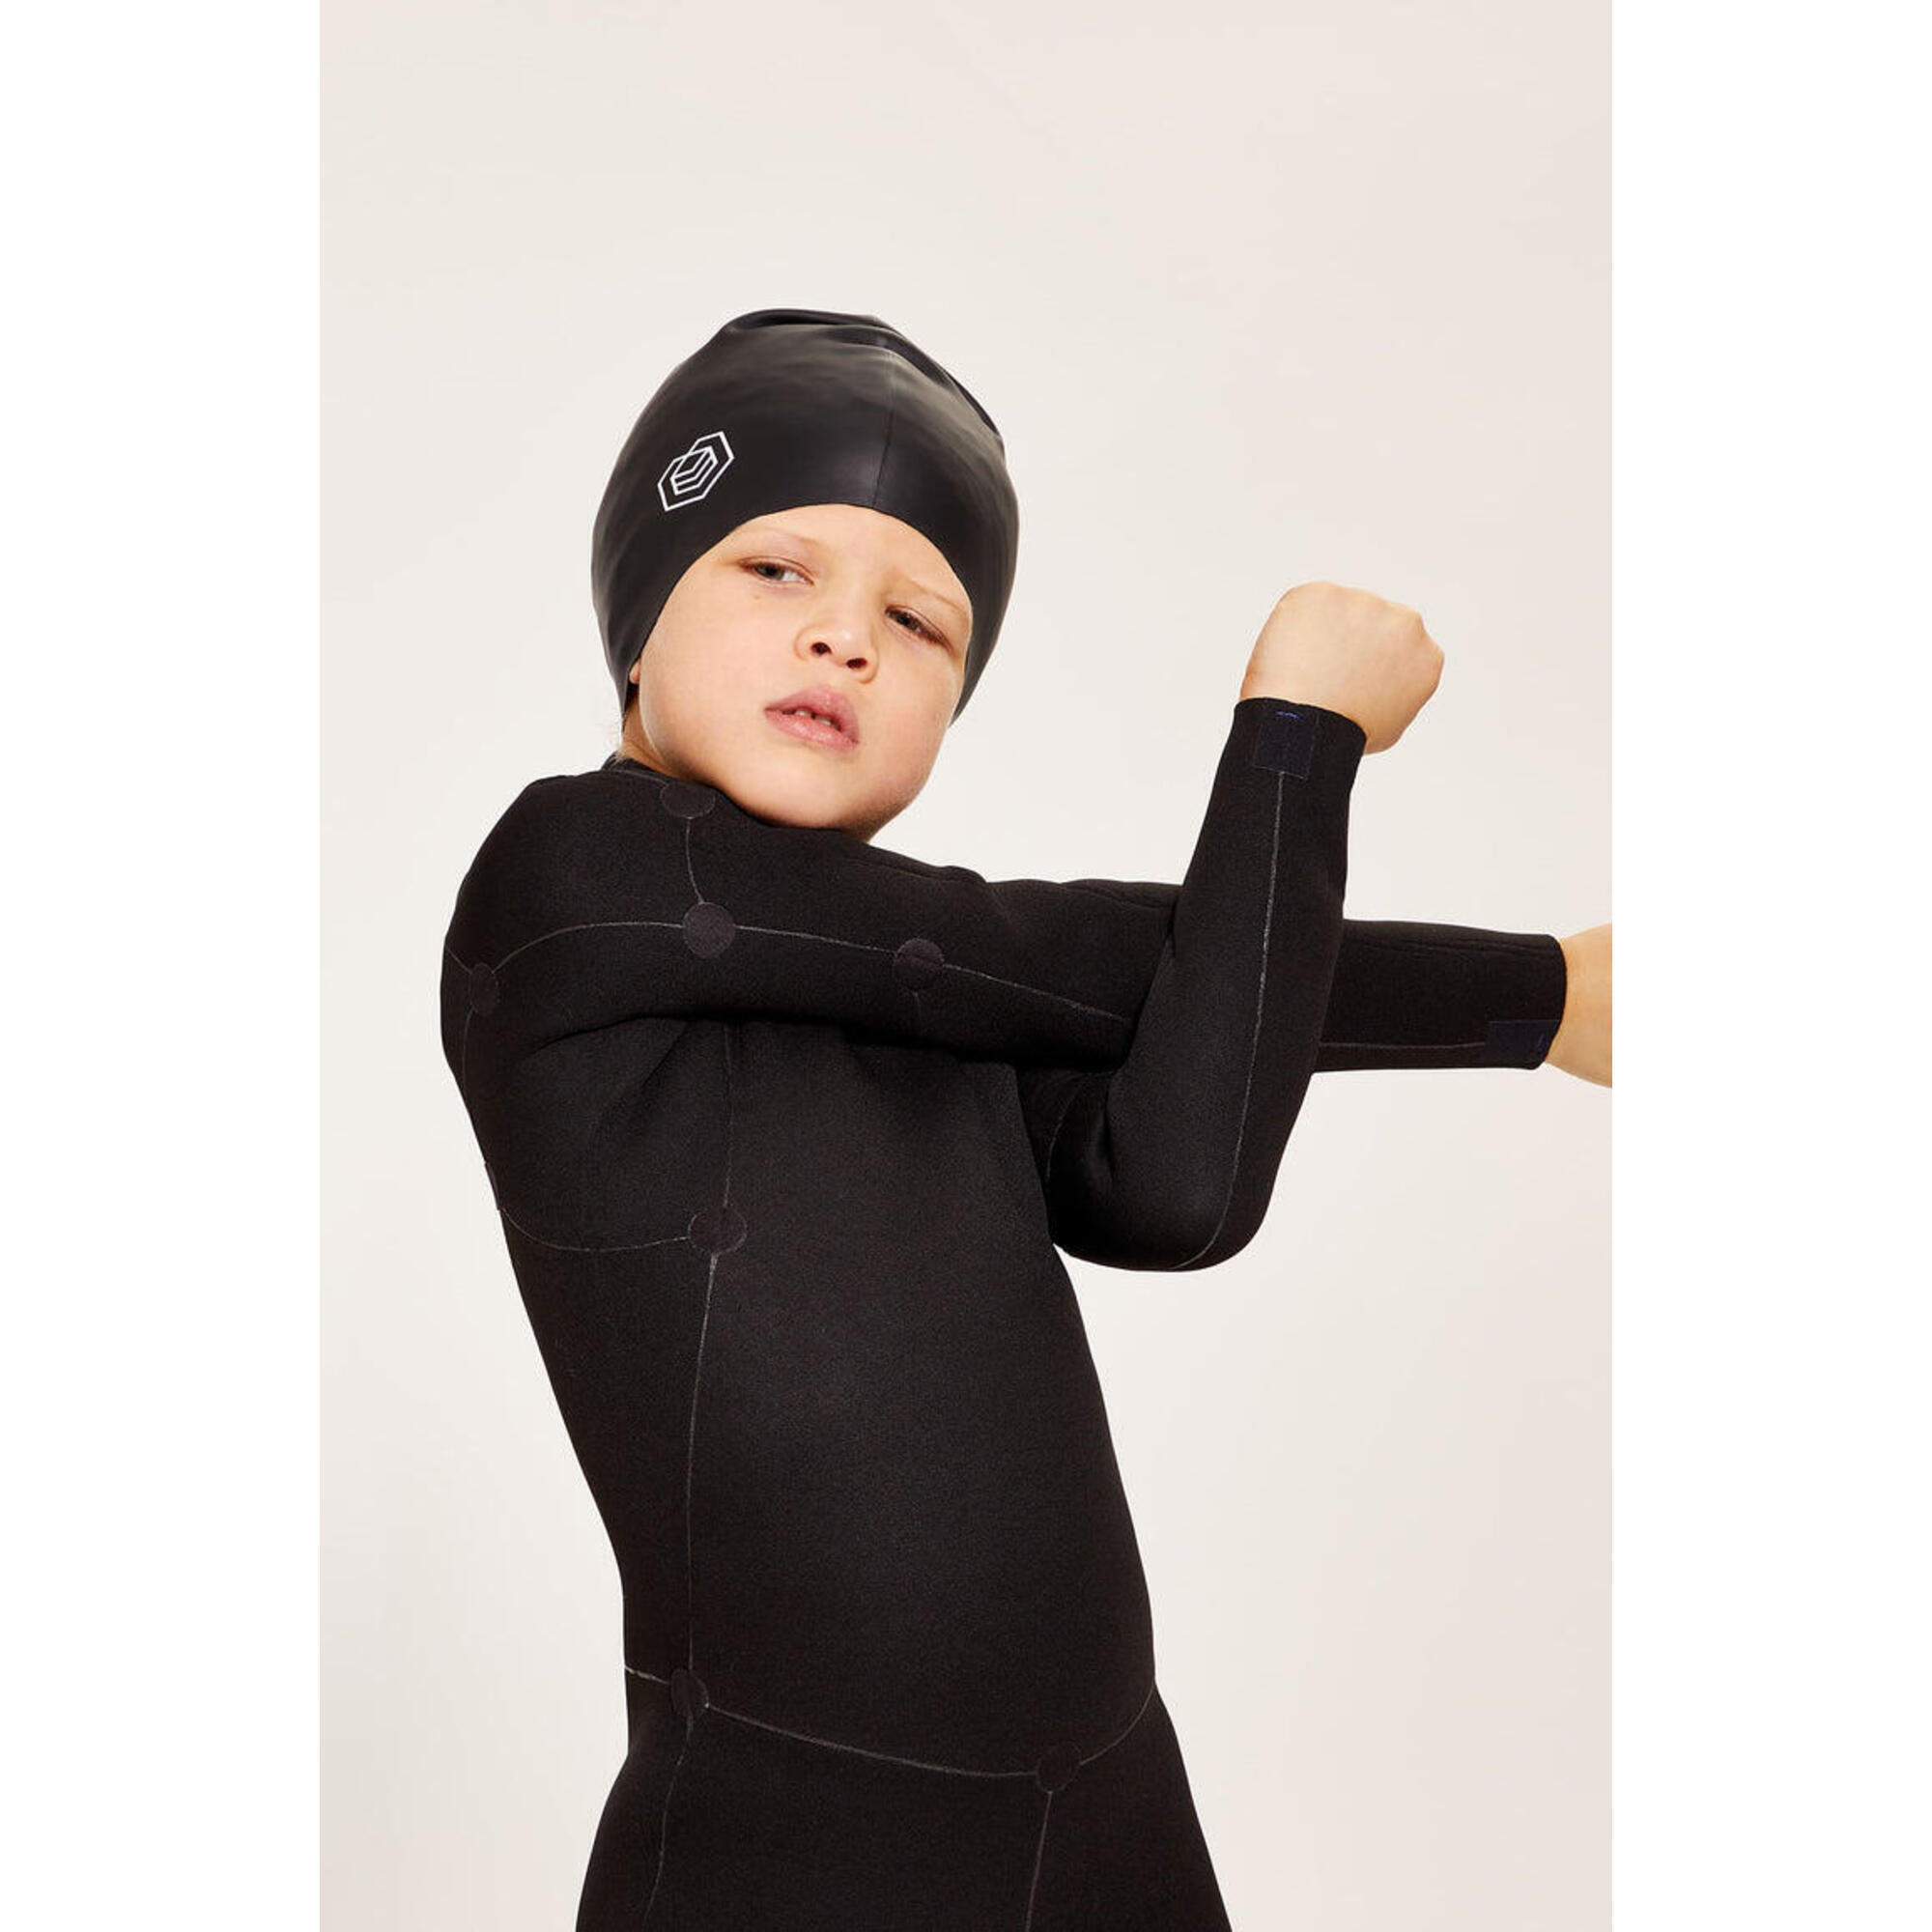 Children's Swim Cap for Long Hair (Medium) - Black 3/5